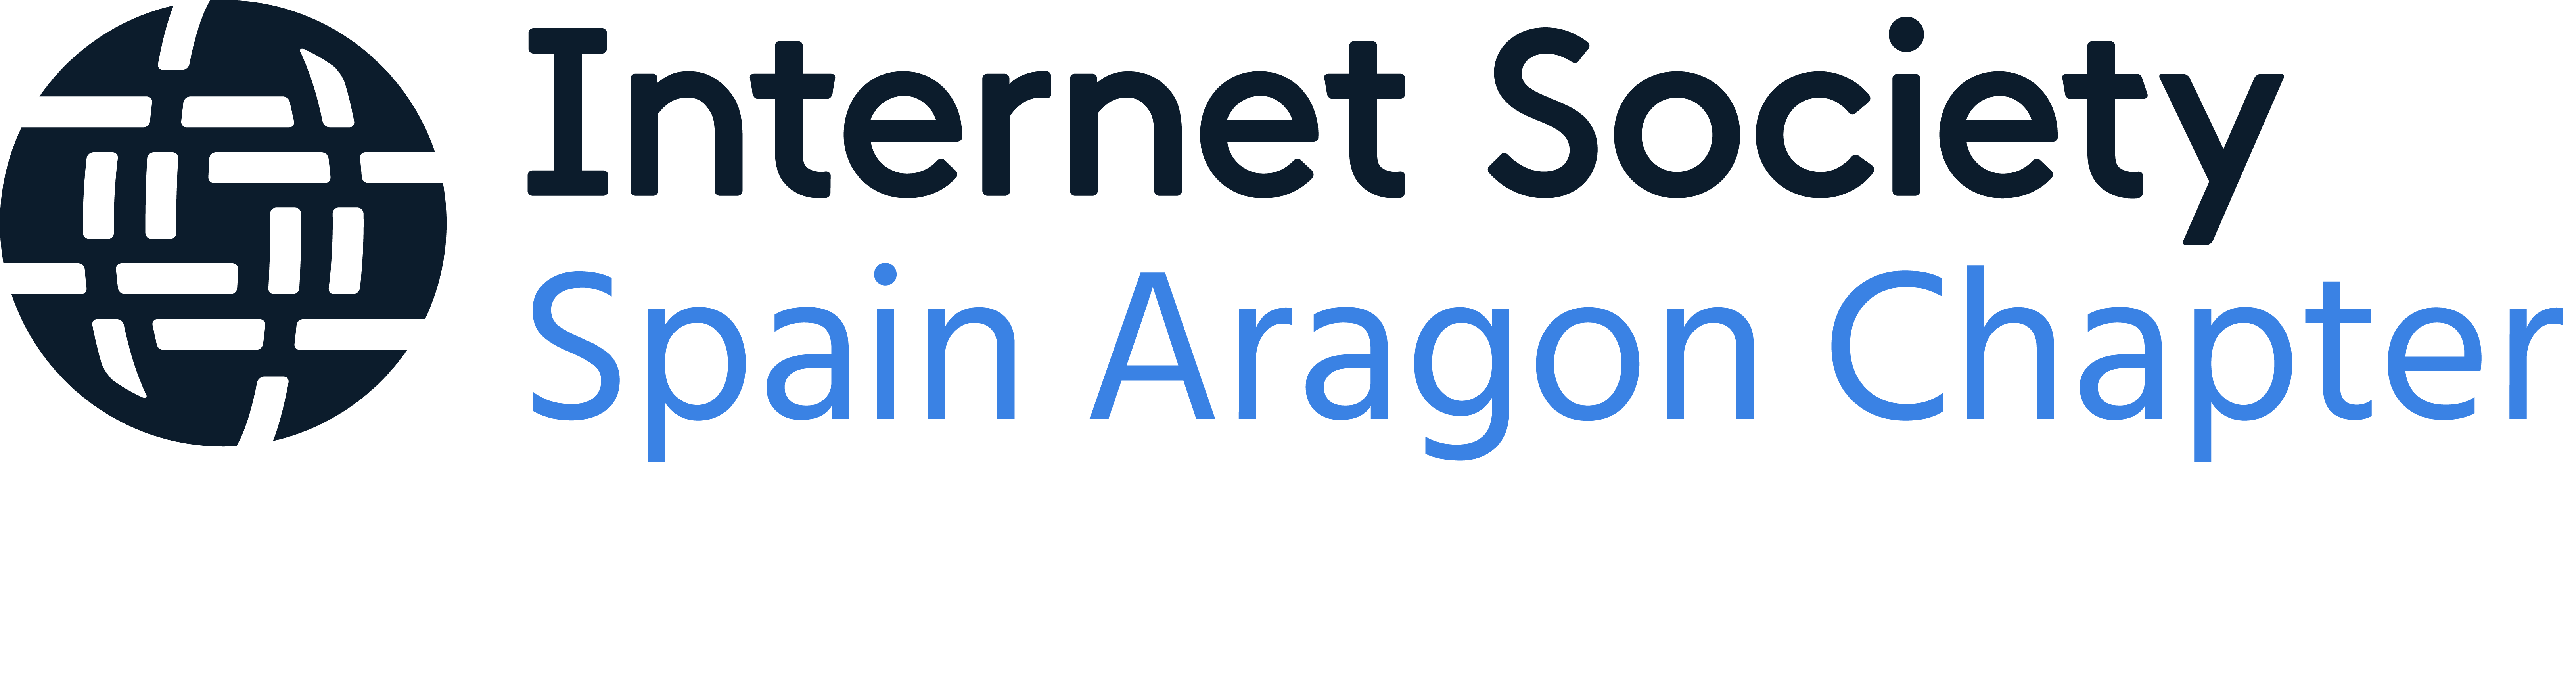 Internet Society Aragón